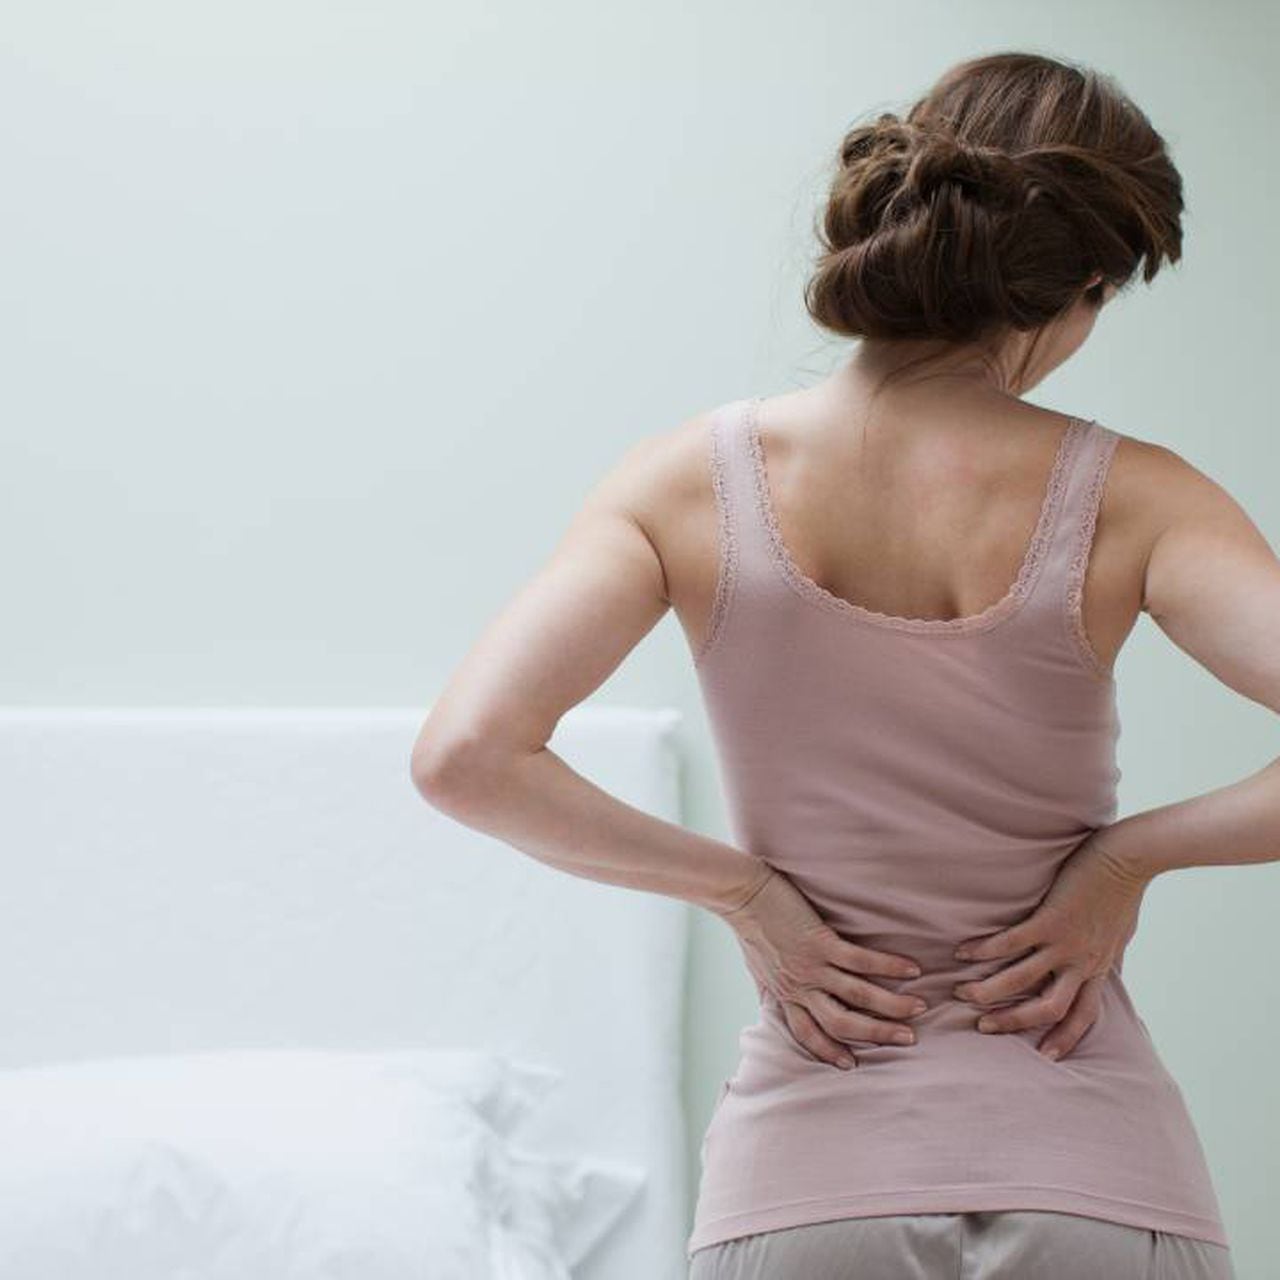 A qué se debe el dolor de espalda al toser?